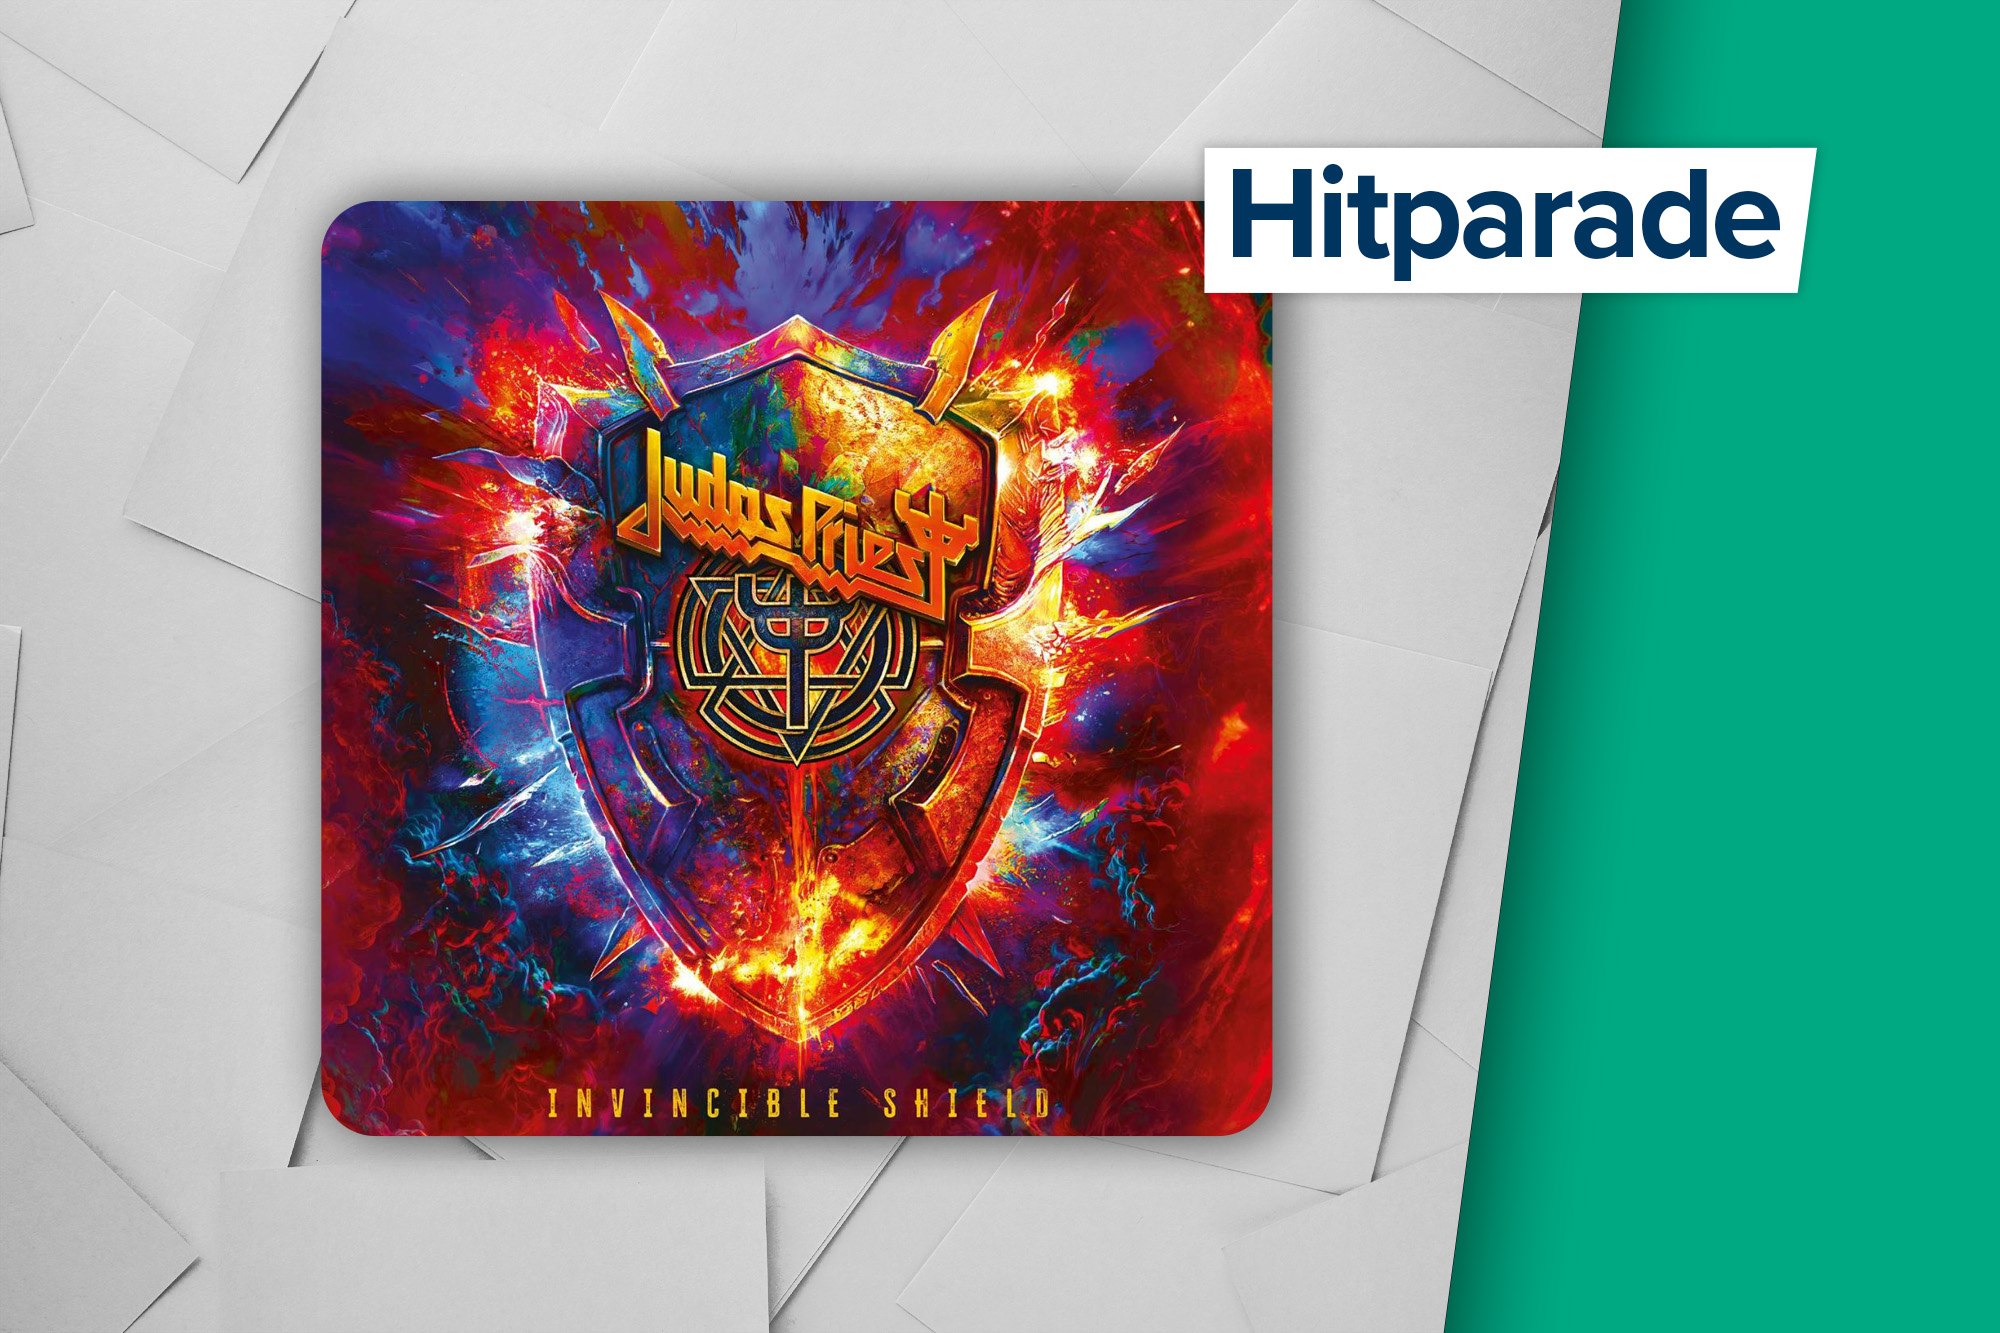 Höchster Neueinstieg in der Hitparade: "Crown Of Horns" von Judas Priest